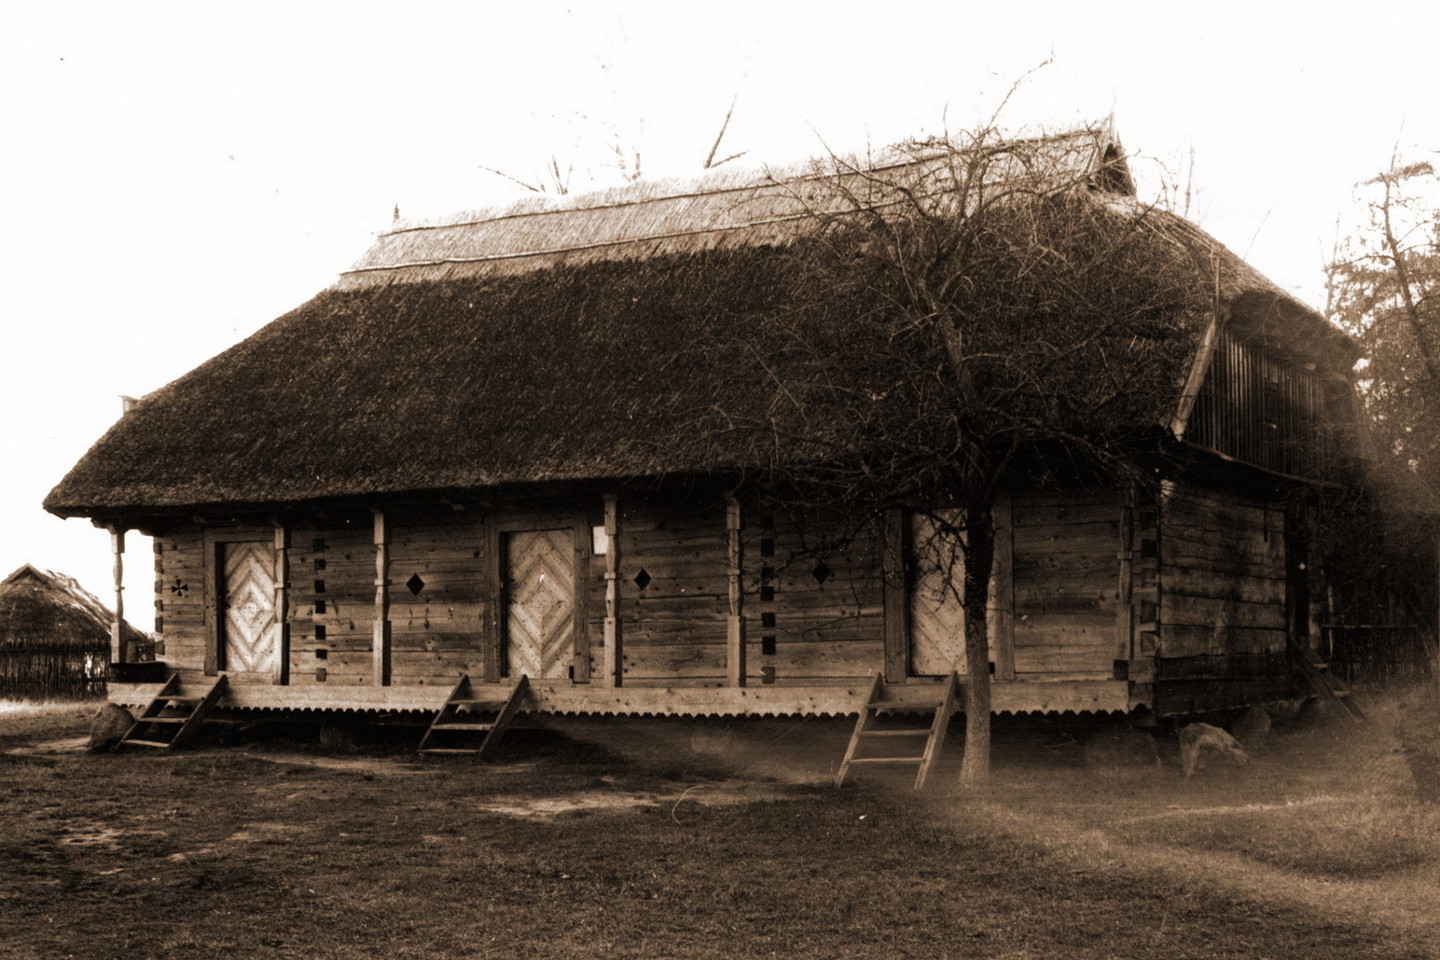 Didysis svirnas iš Darbėnų apylinkės Maloniškių kaimo. <br>Vilniaus regioninio valstybės archyvo (J.Jurgučio) nuotr.